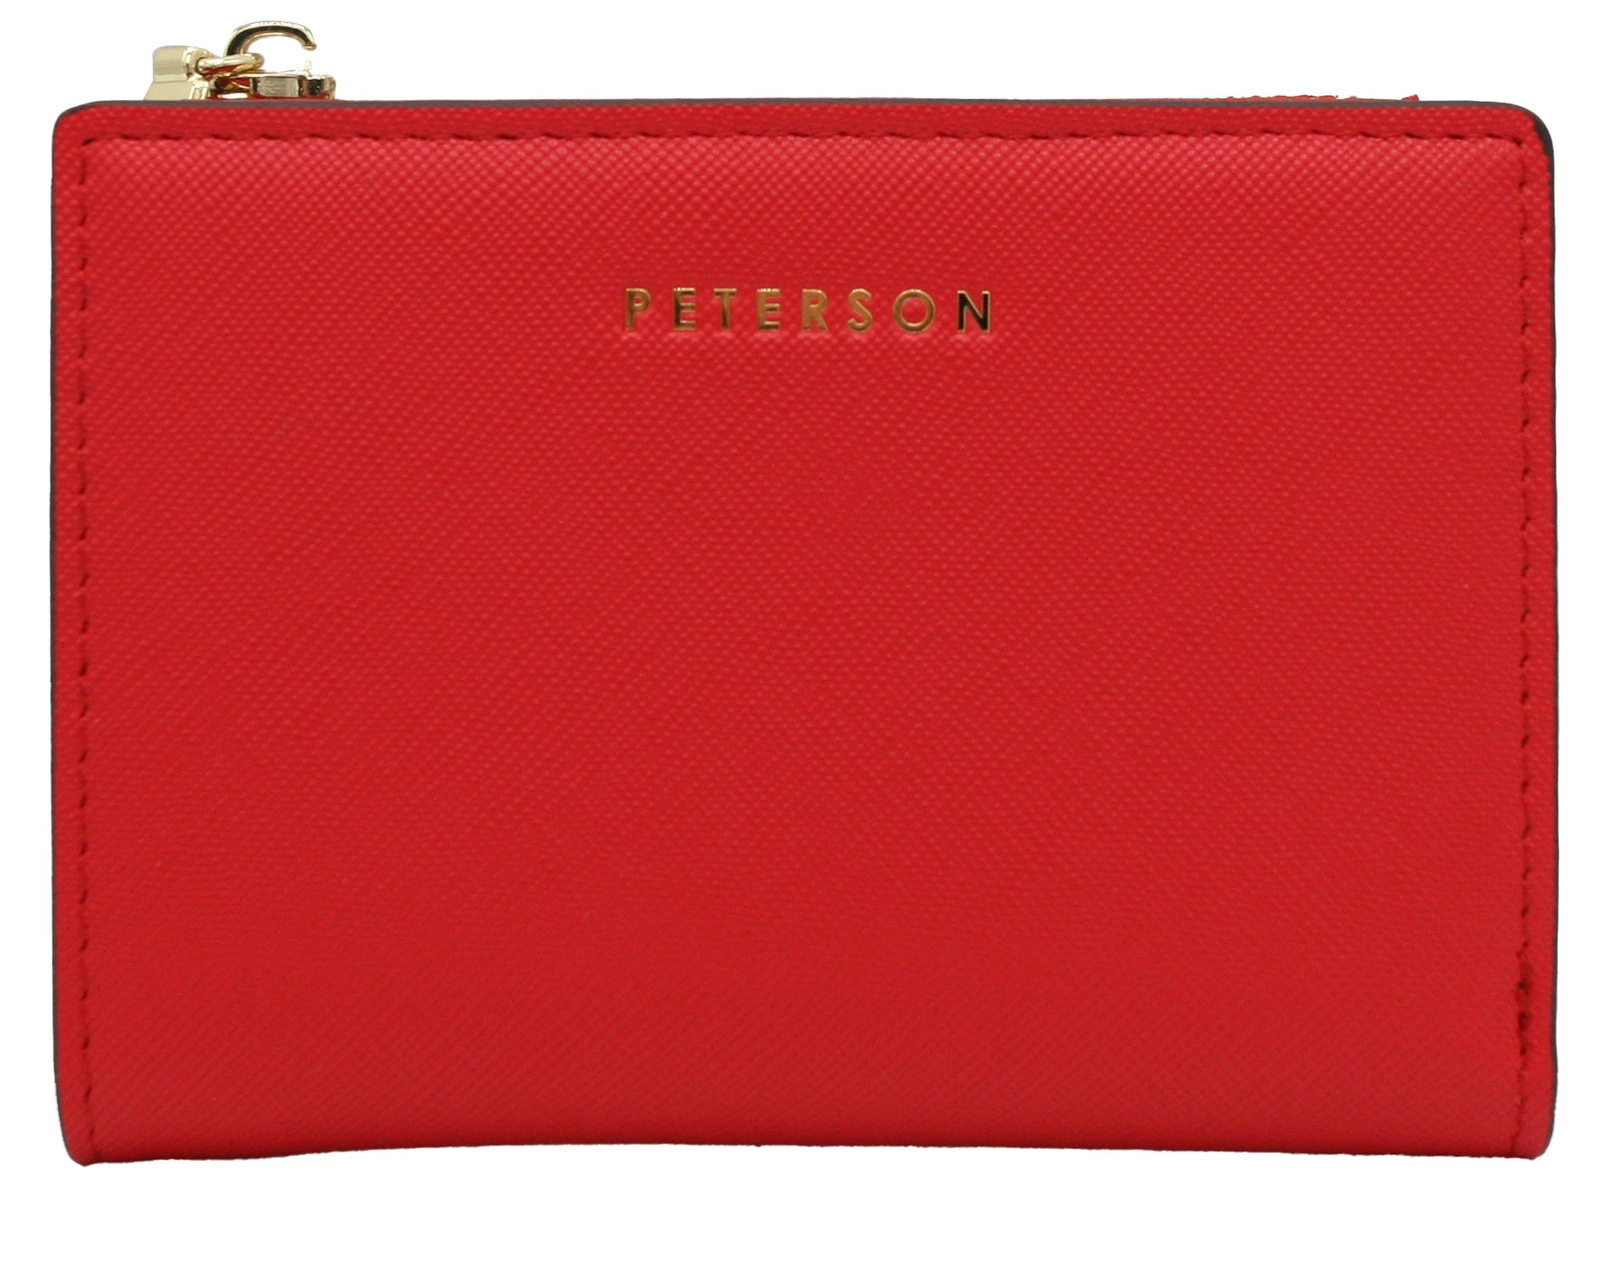 Peterson Dámská kožená peněženka Dhailzel červená One size